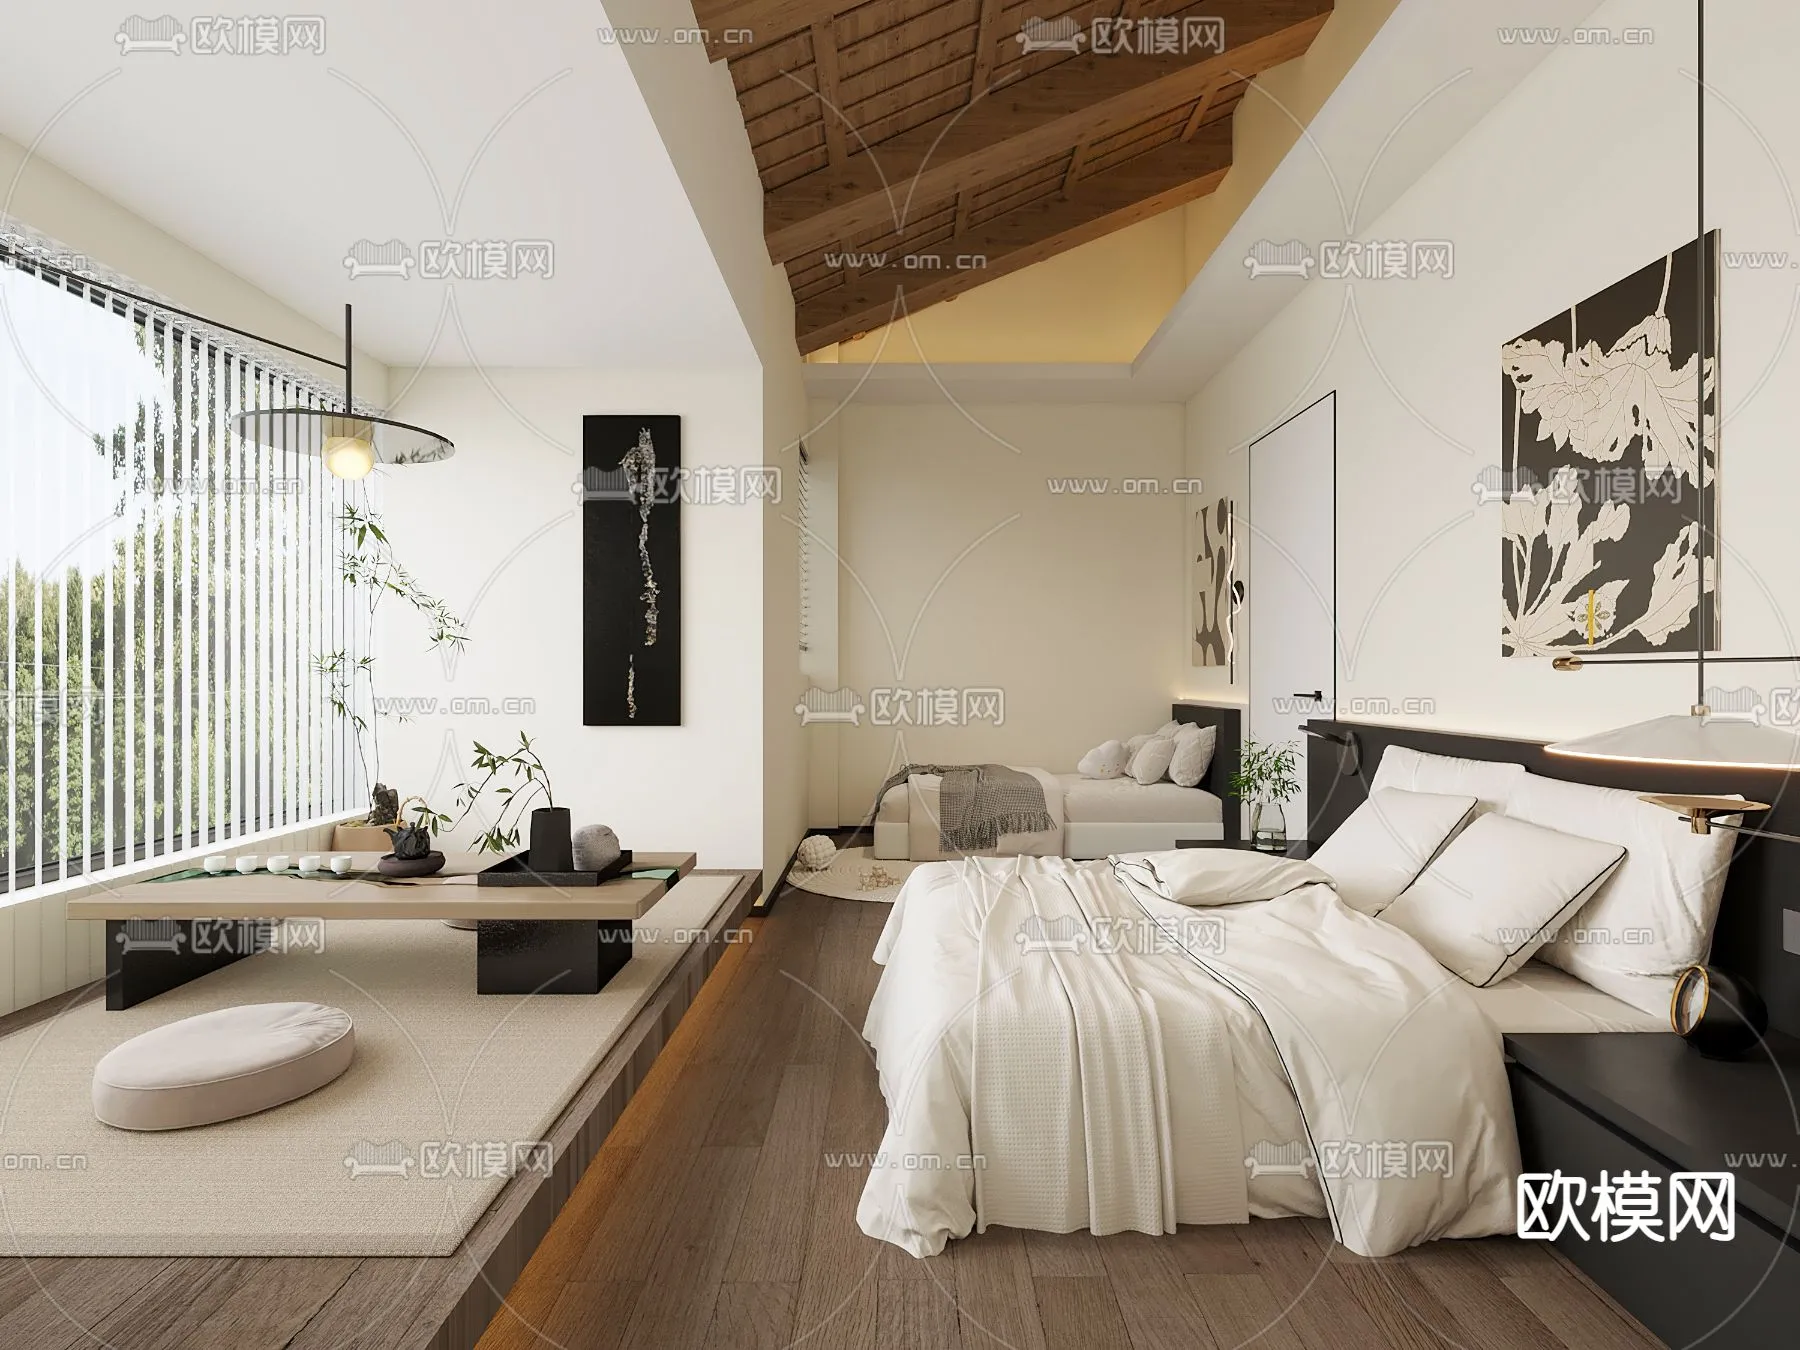 Hotel Room – Bedroom For Hotel 3D Models – 006